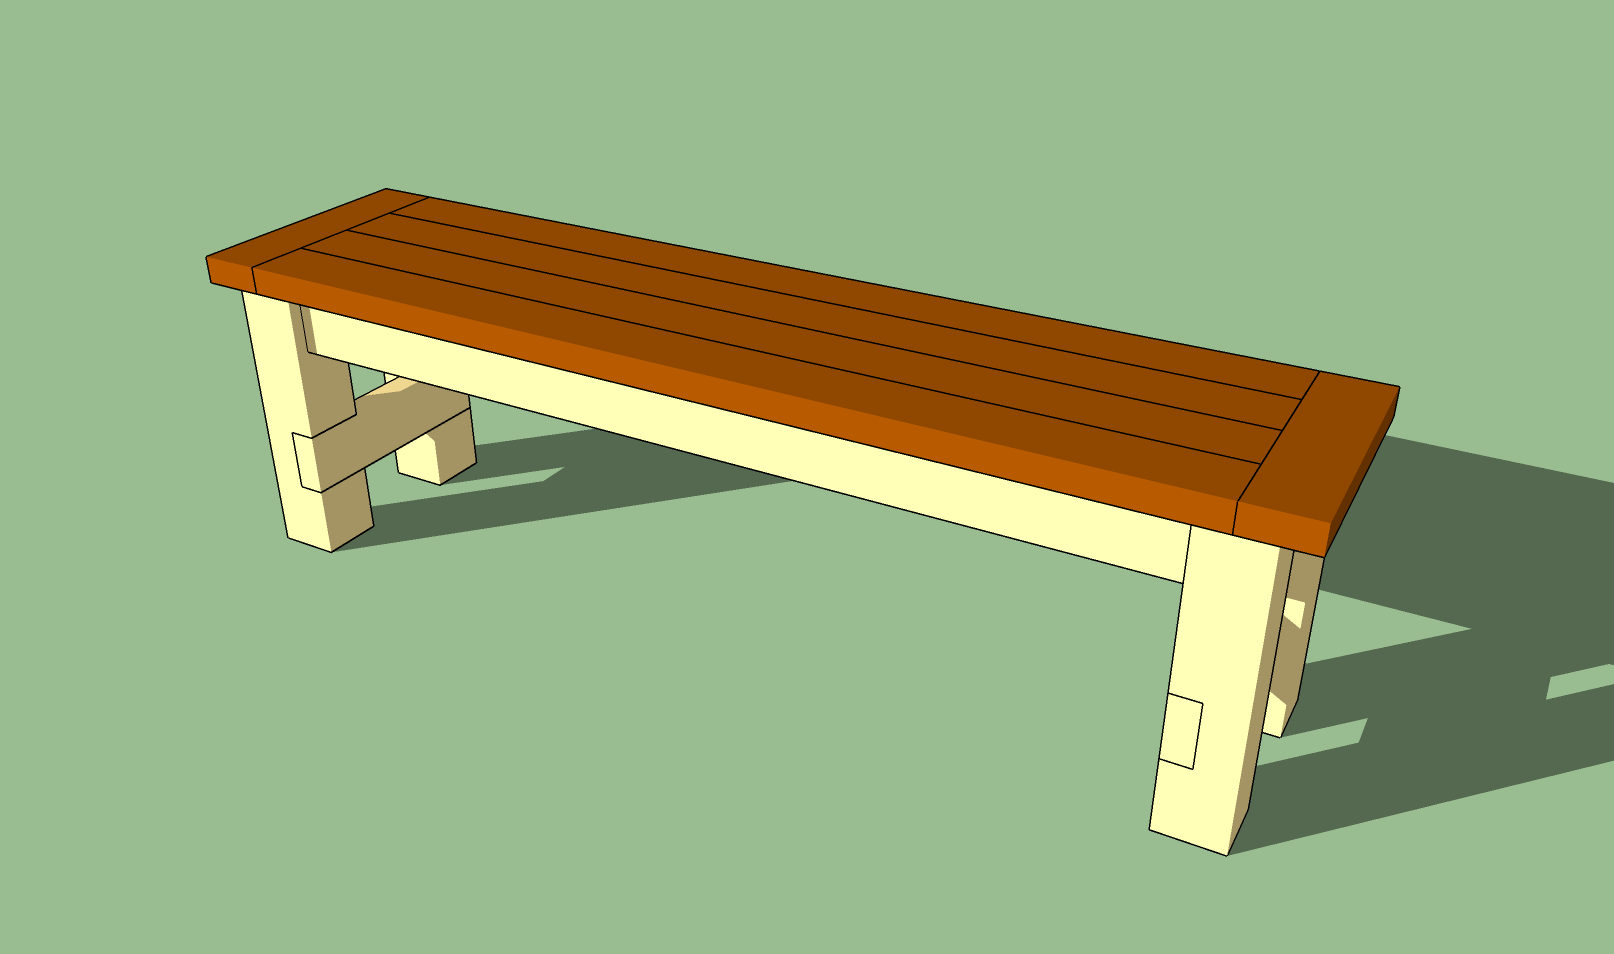 схема деревянной скамейки со спинкой